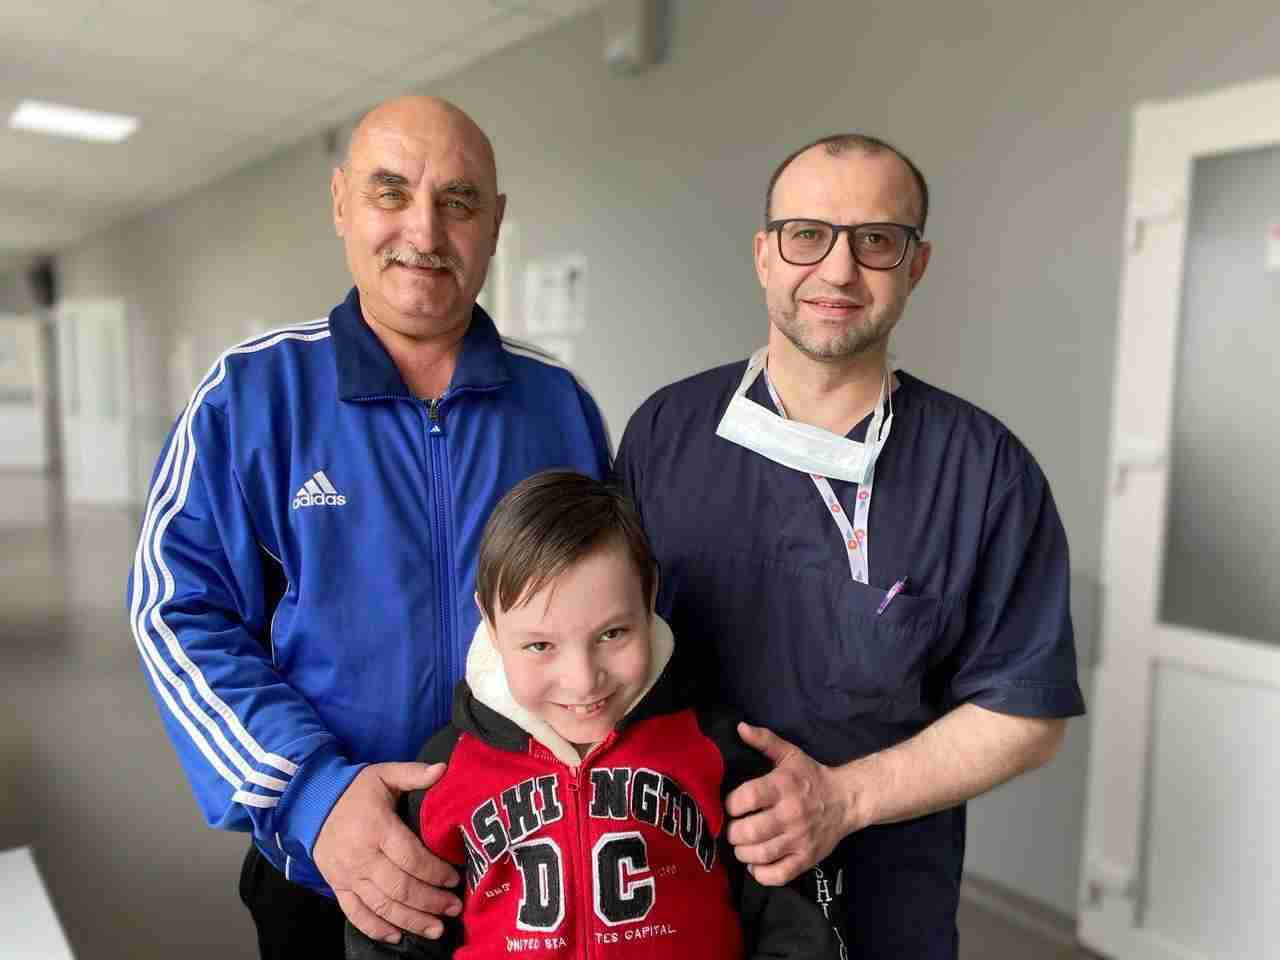 Міг задихнутися будь-якої миті: львівські лікарі врятували життя дитини (ФОТО)